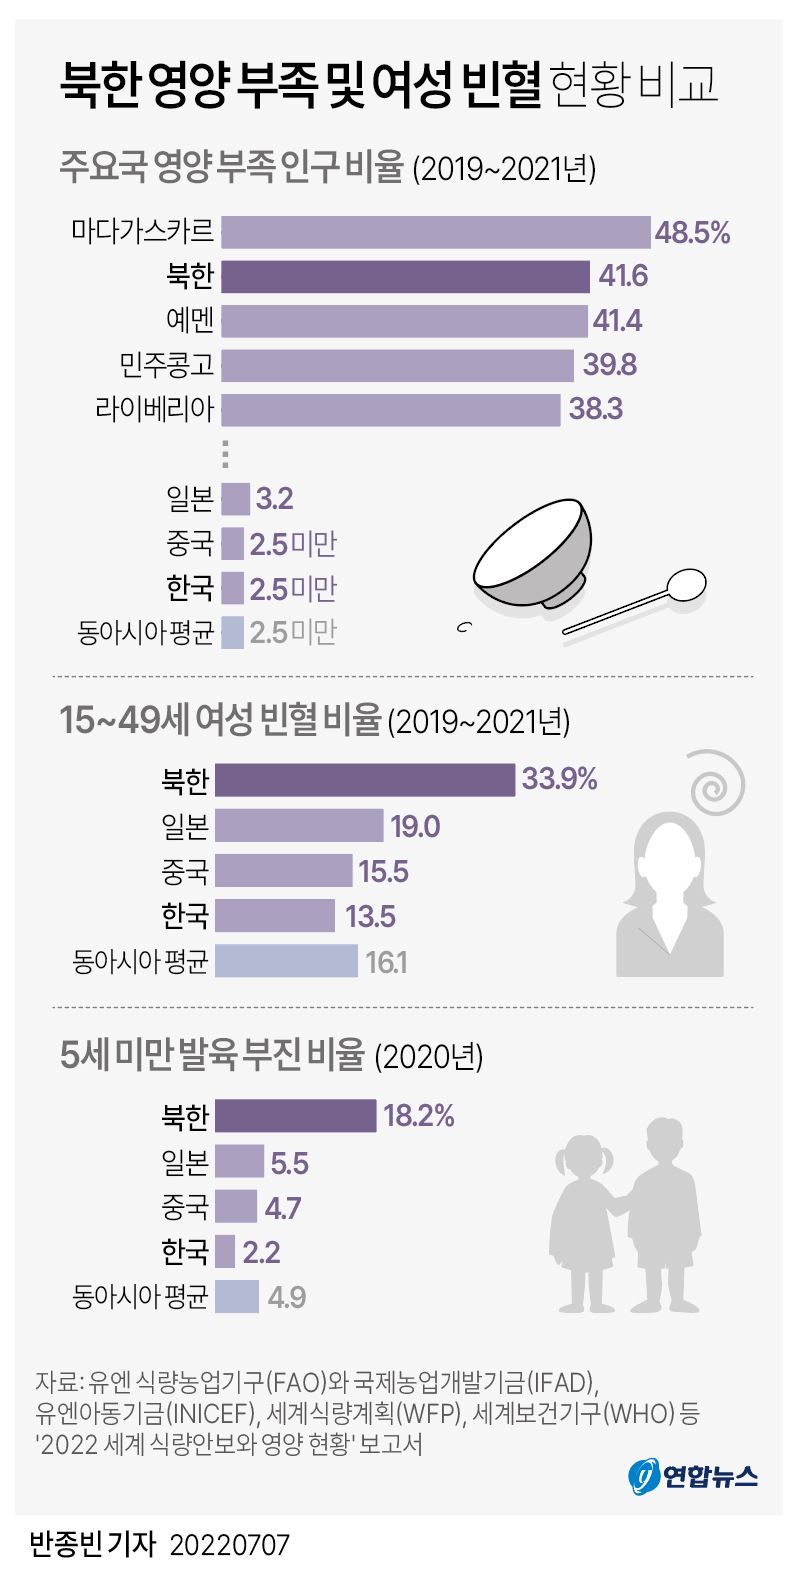  북한 영양 부족 및 여성 빈혈 현황 비교